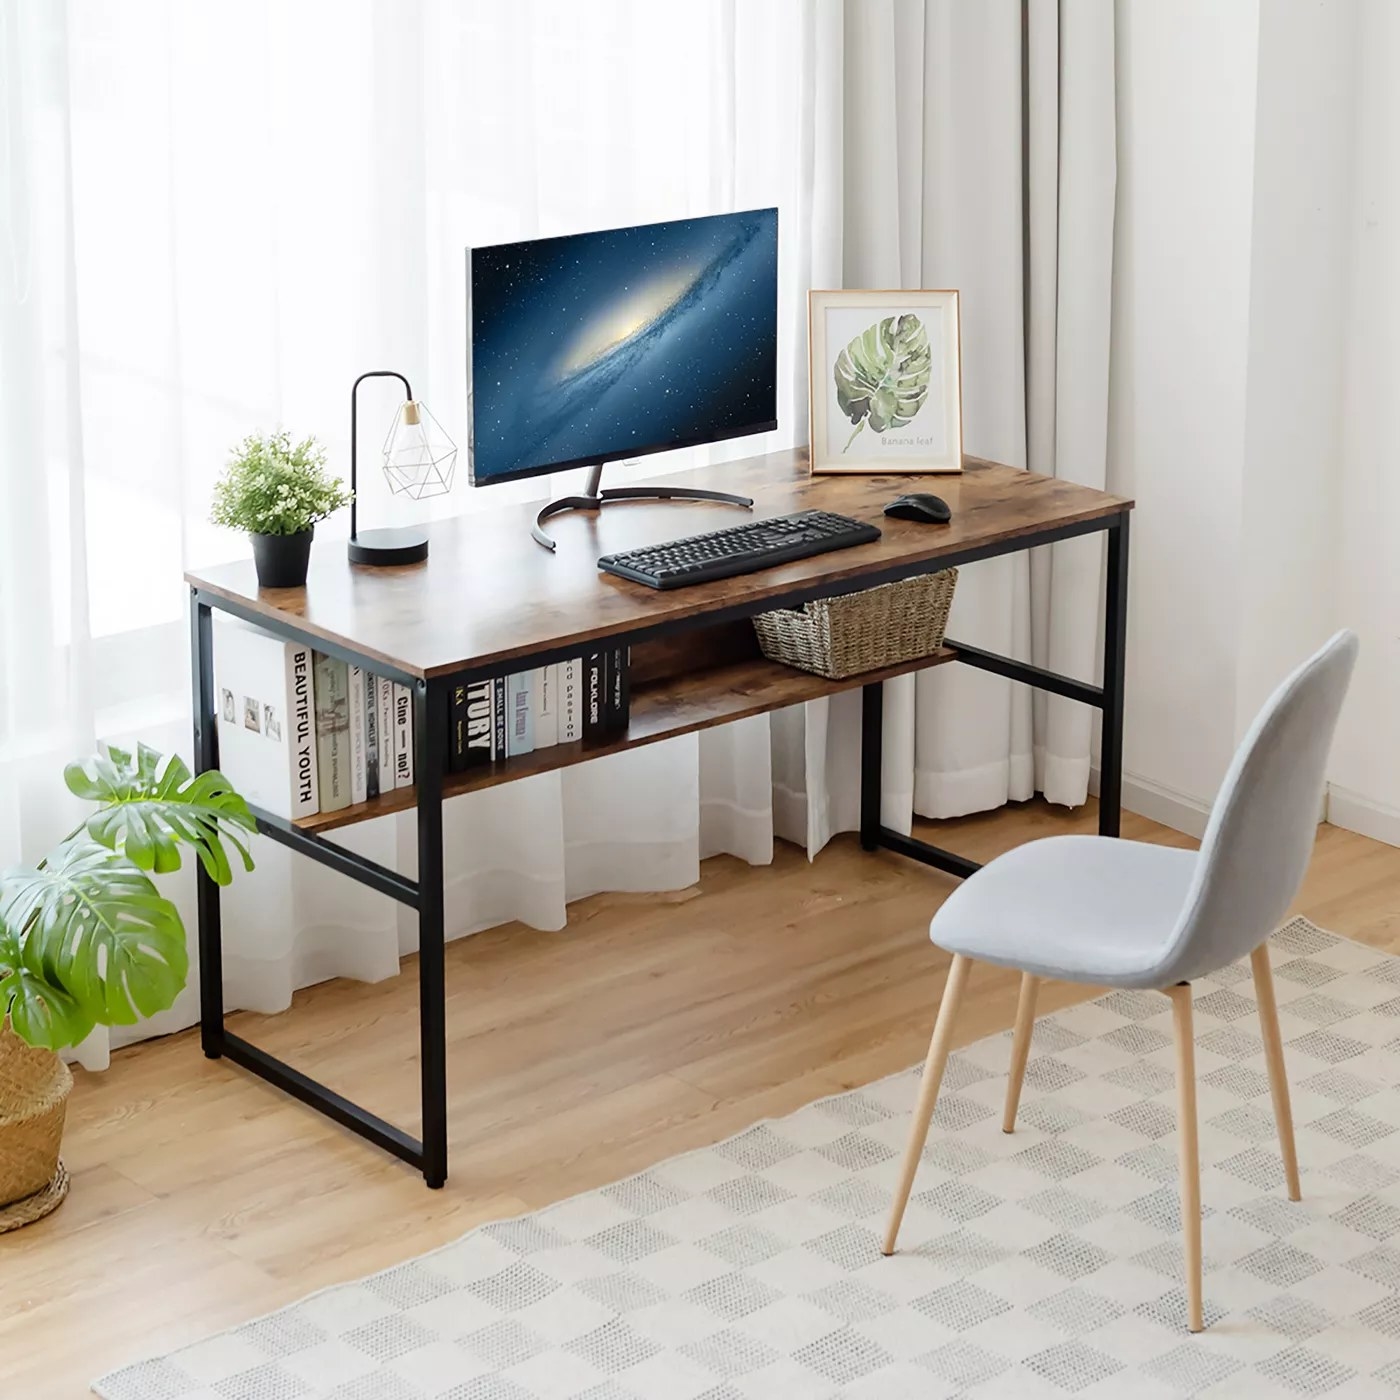 The desk with a storage shelf